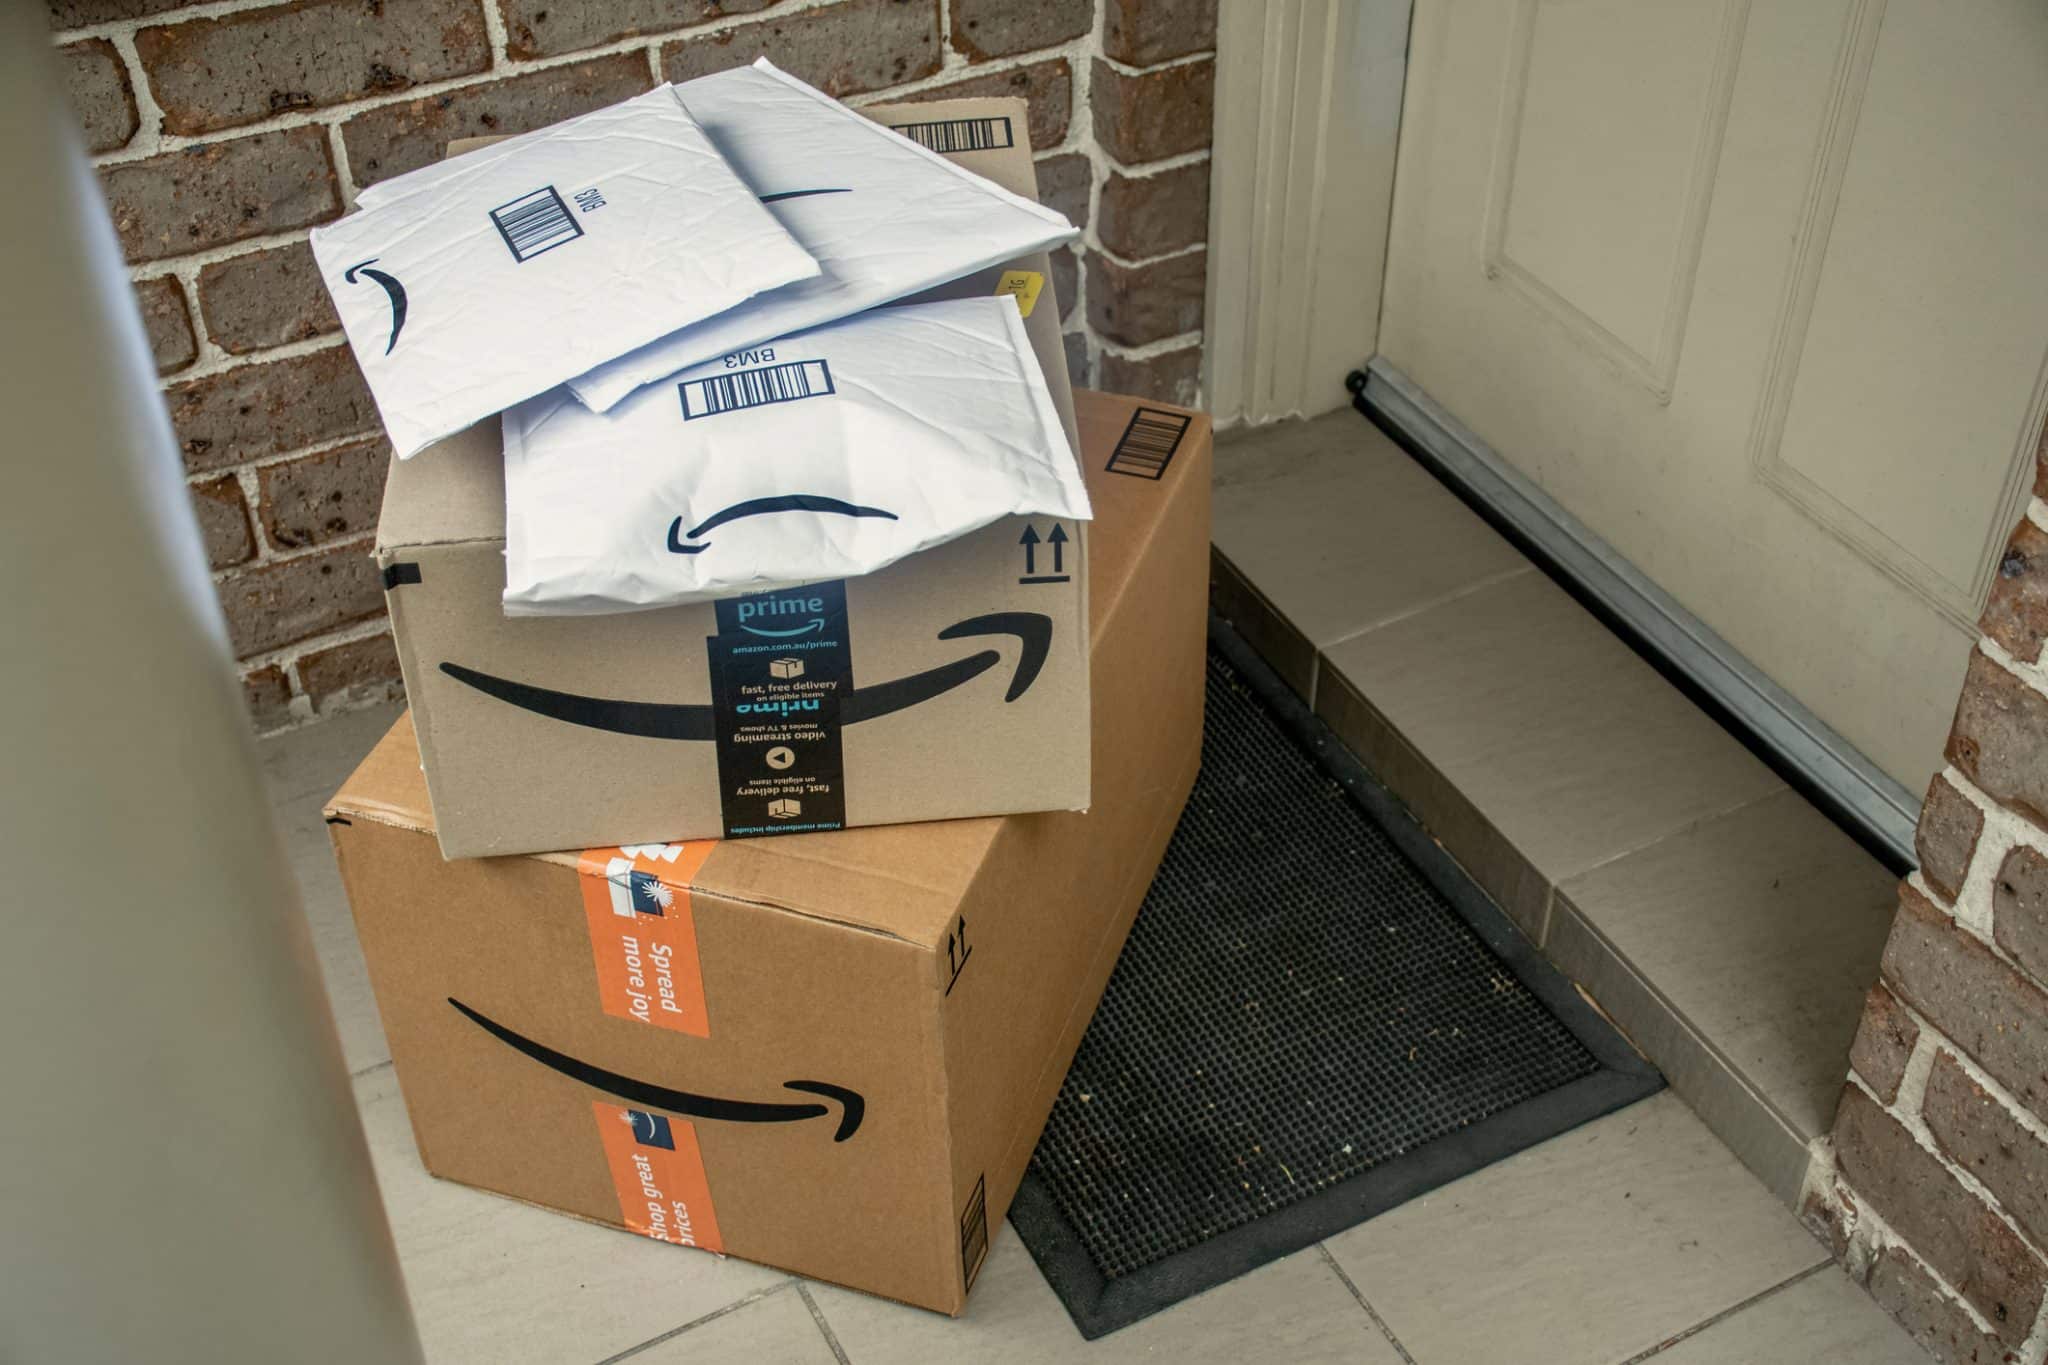 Amazon packages in front of a door